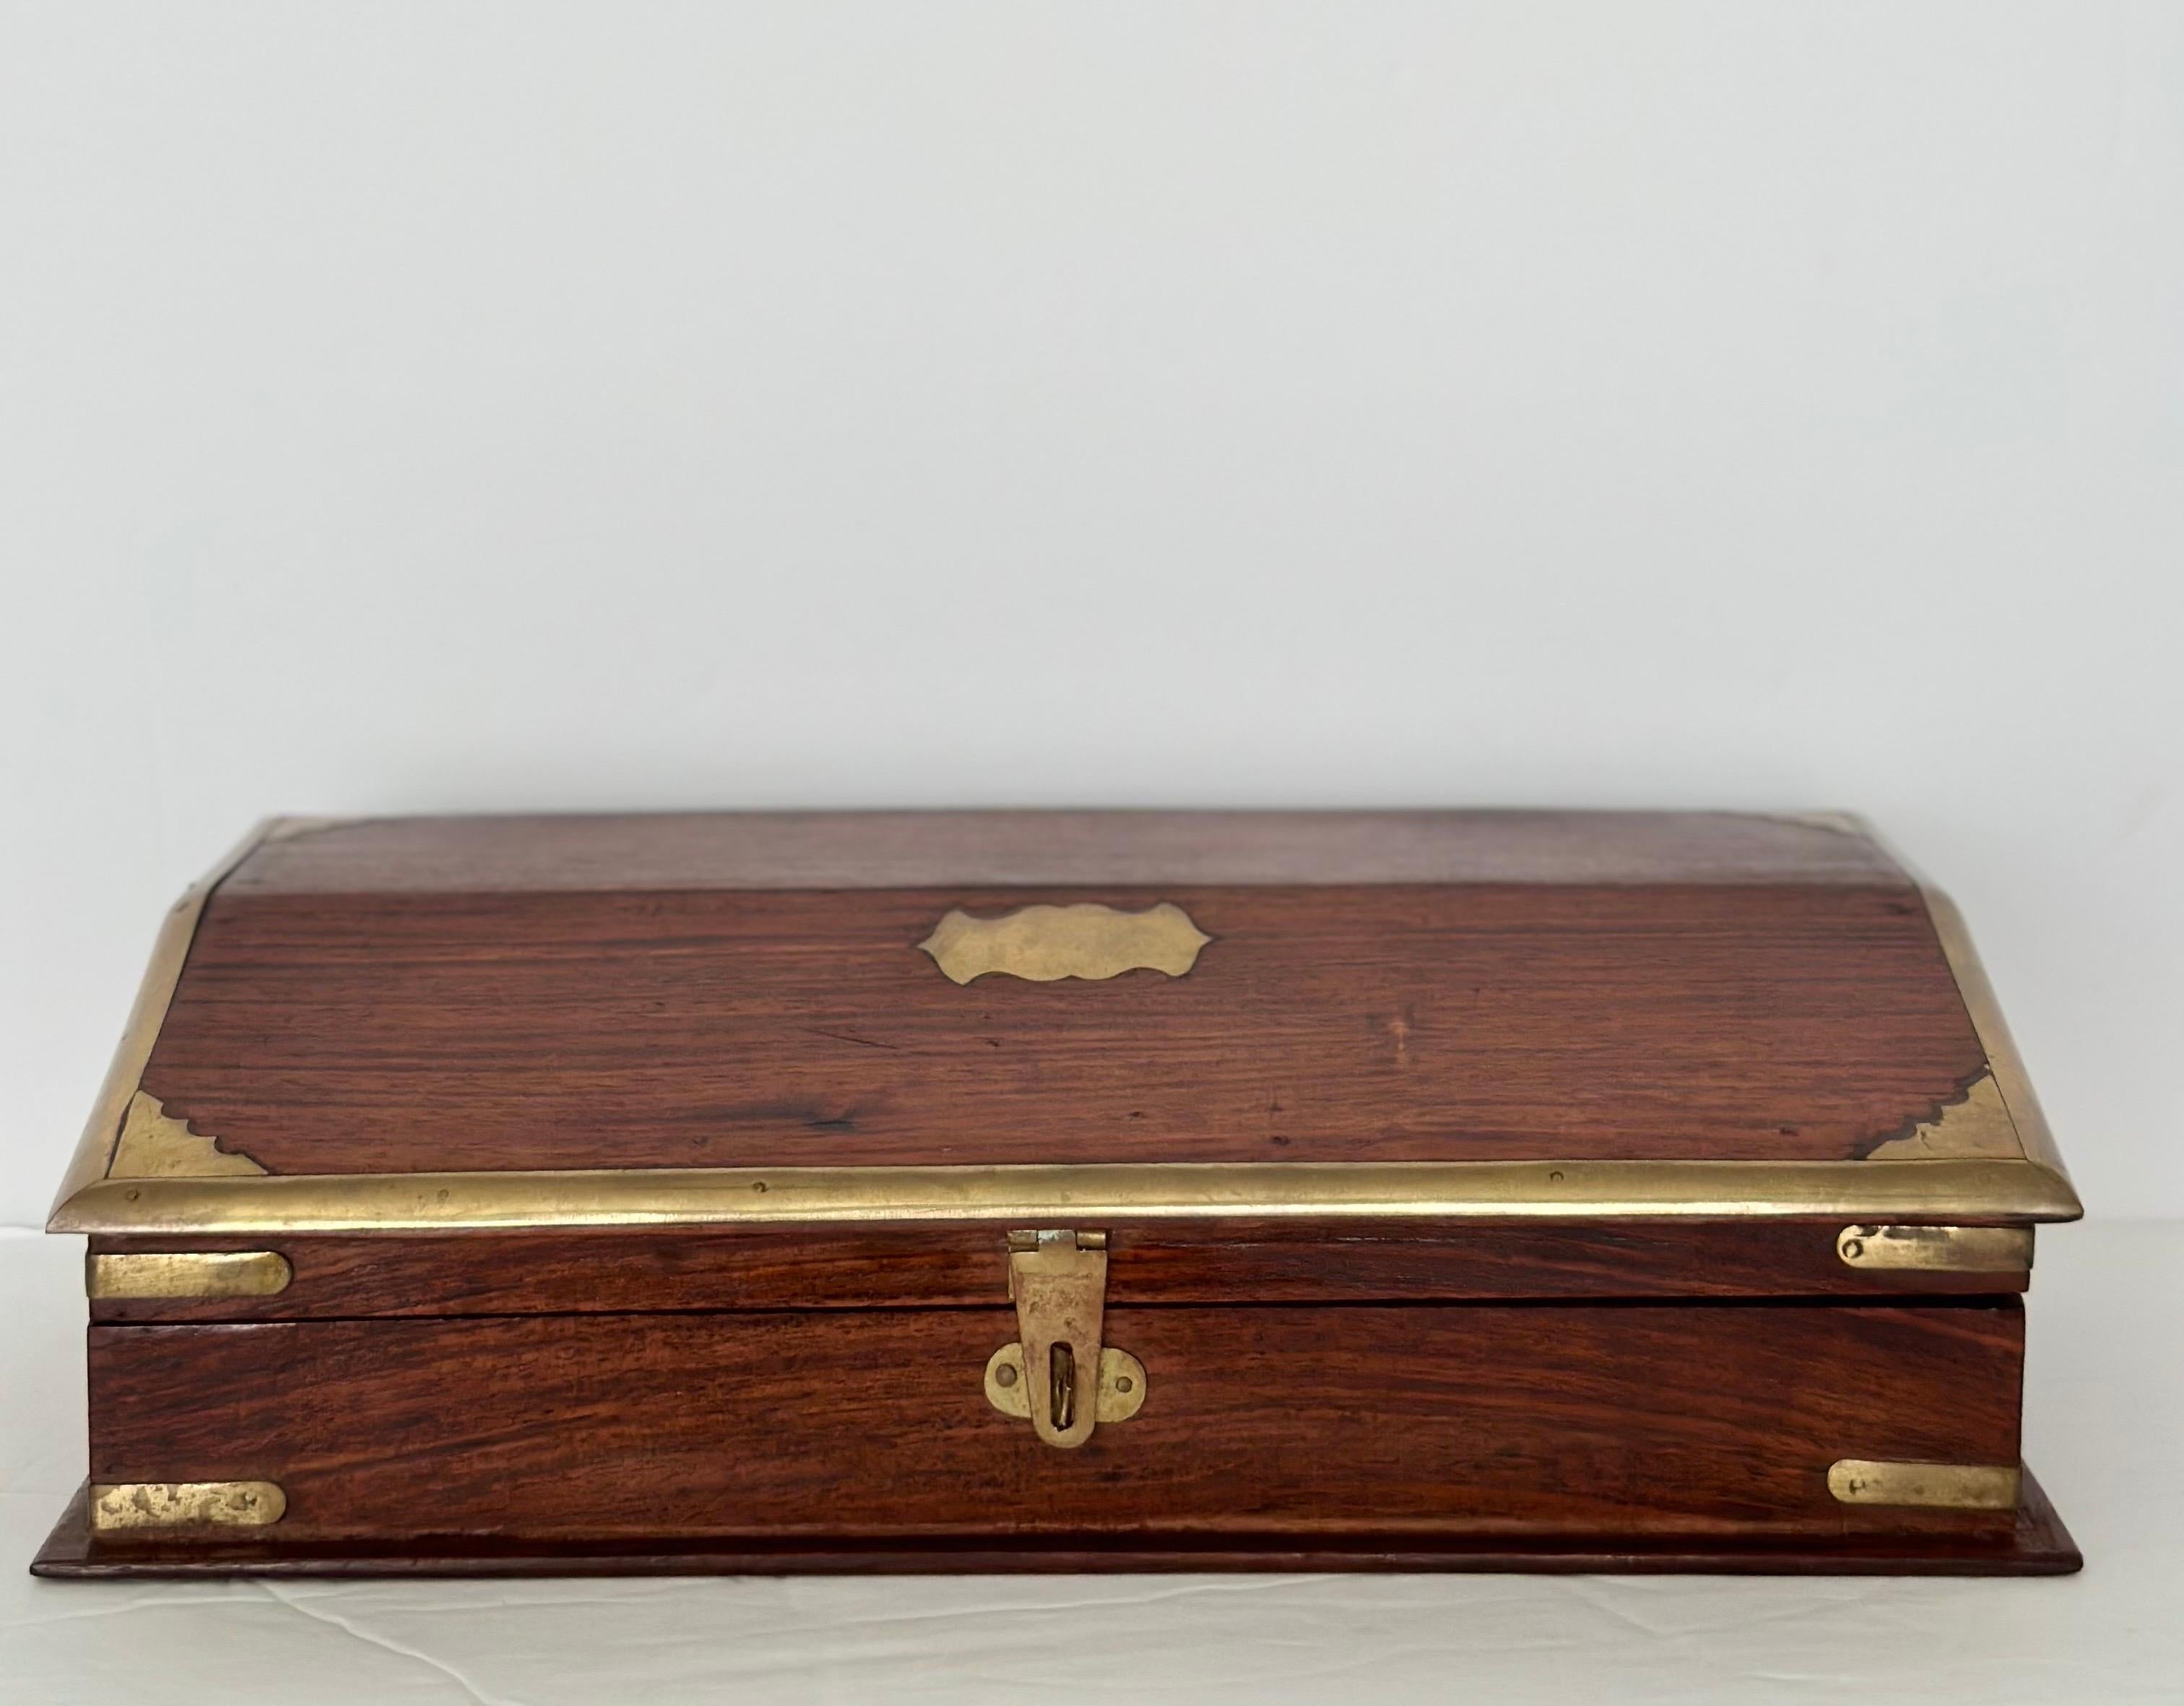 Nous avons le plaisir de vous proposer une boîte en bois intemporelle de style Campaigner, gracieusement ornée d'incrustations en laiton, datant des années 1950.  L'extérieur de la boîte révèle la beauté naturelle du bois, qui contraste